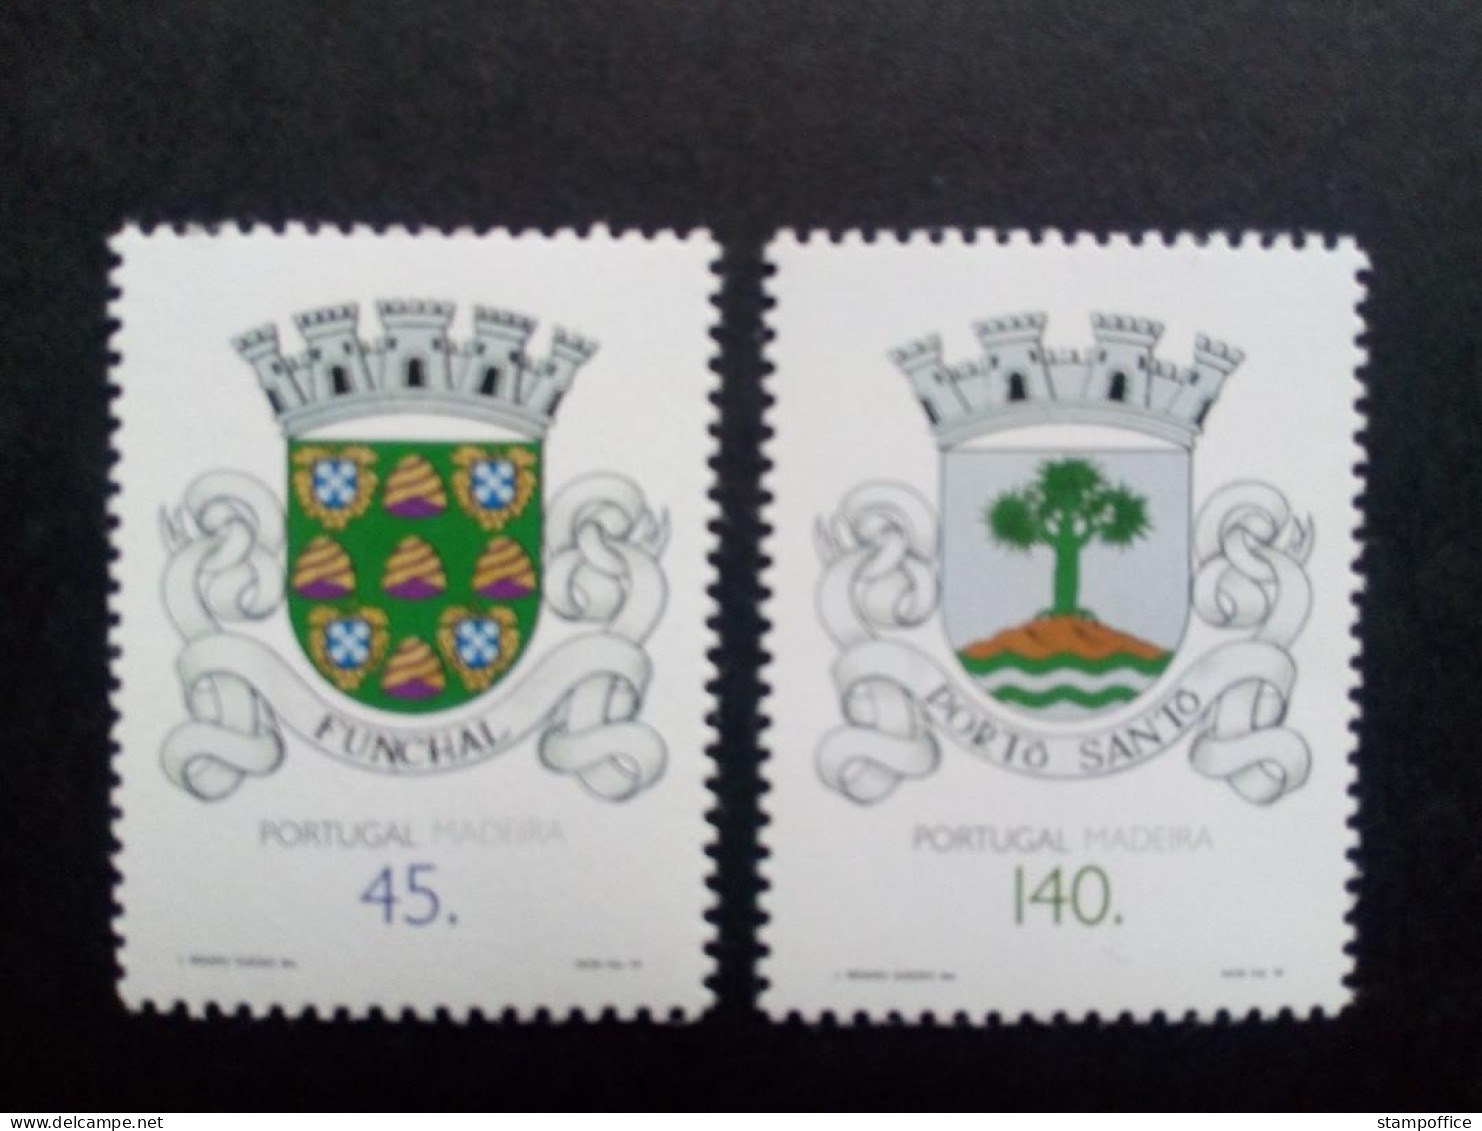 MADEIRA MI-NR. 176-177 POSTFRISCH GEMEINDEWAPPEN 1994 - Briefmarken